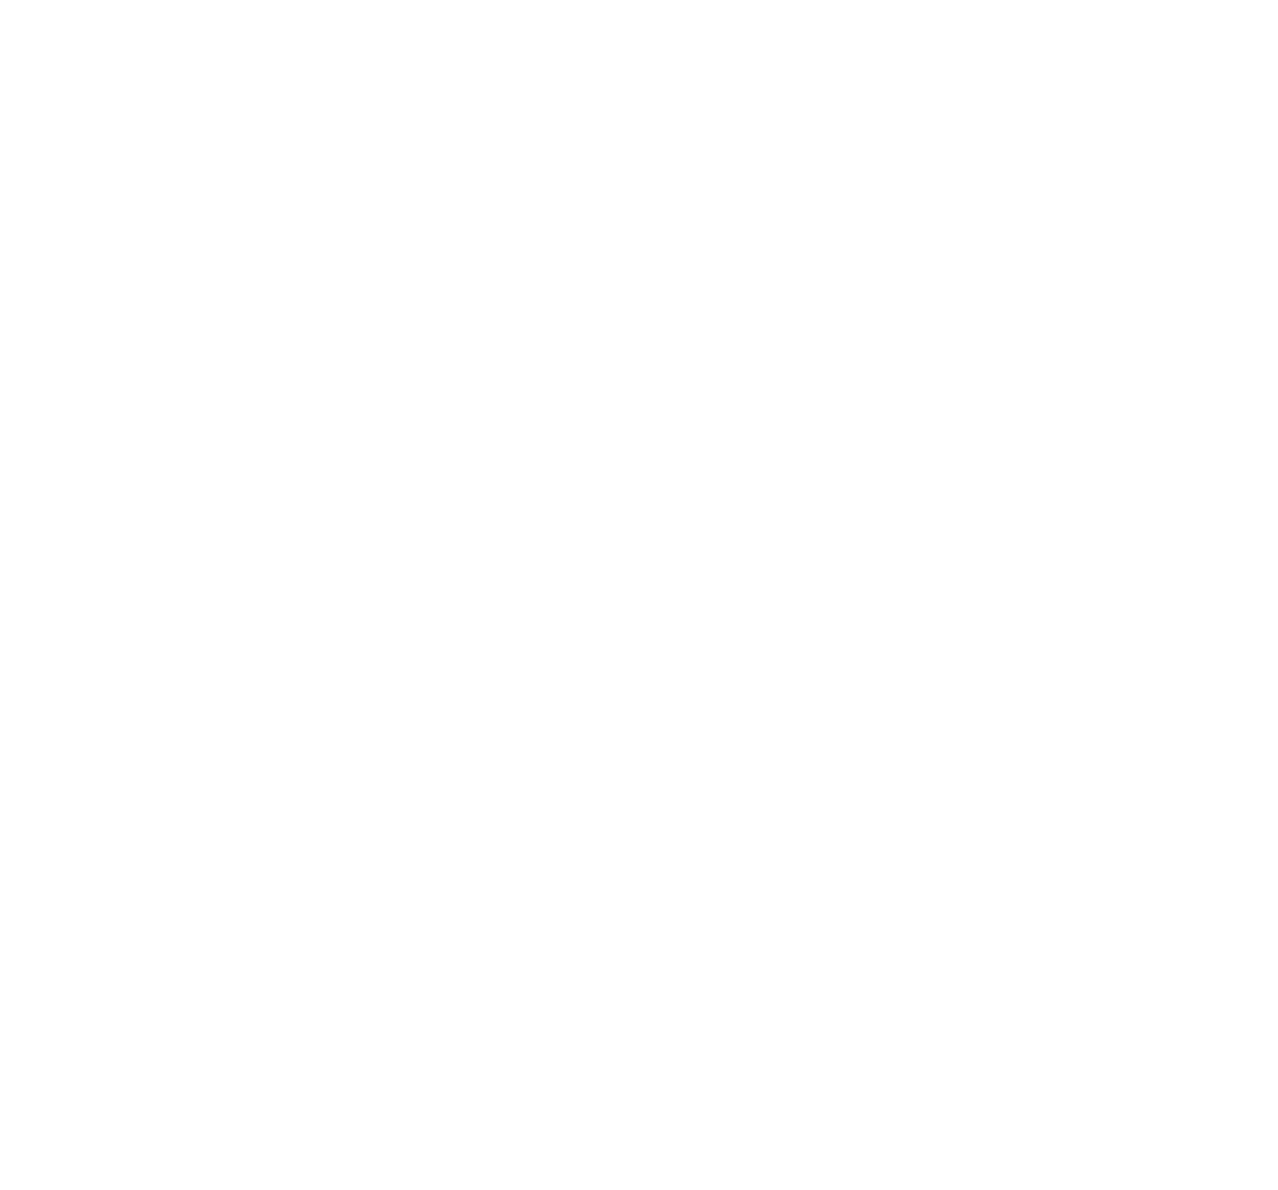 FUJISHO DPF SUPPORT